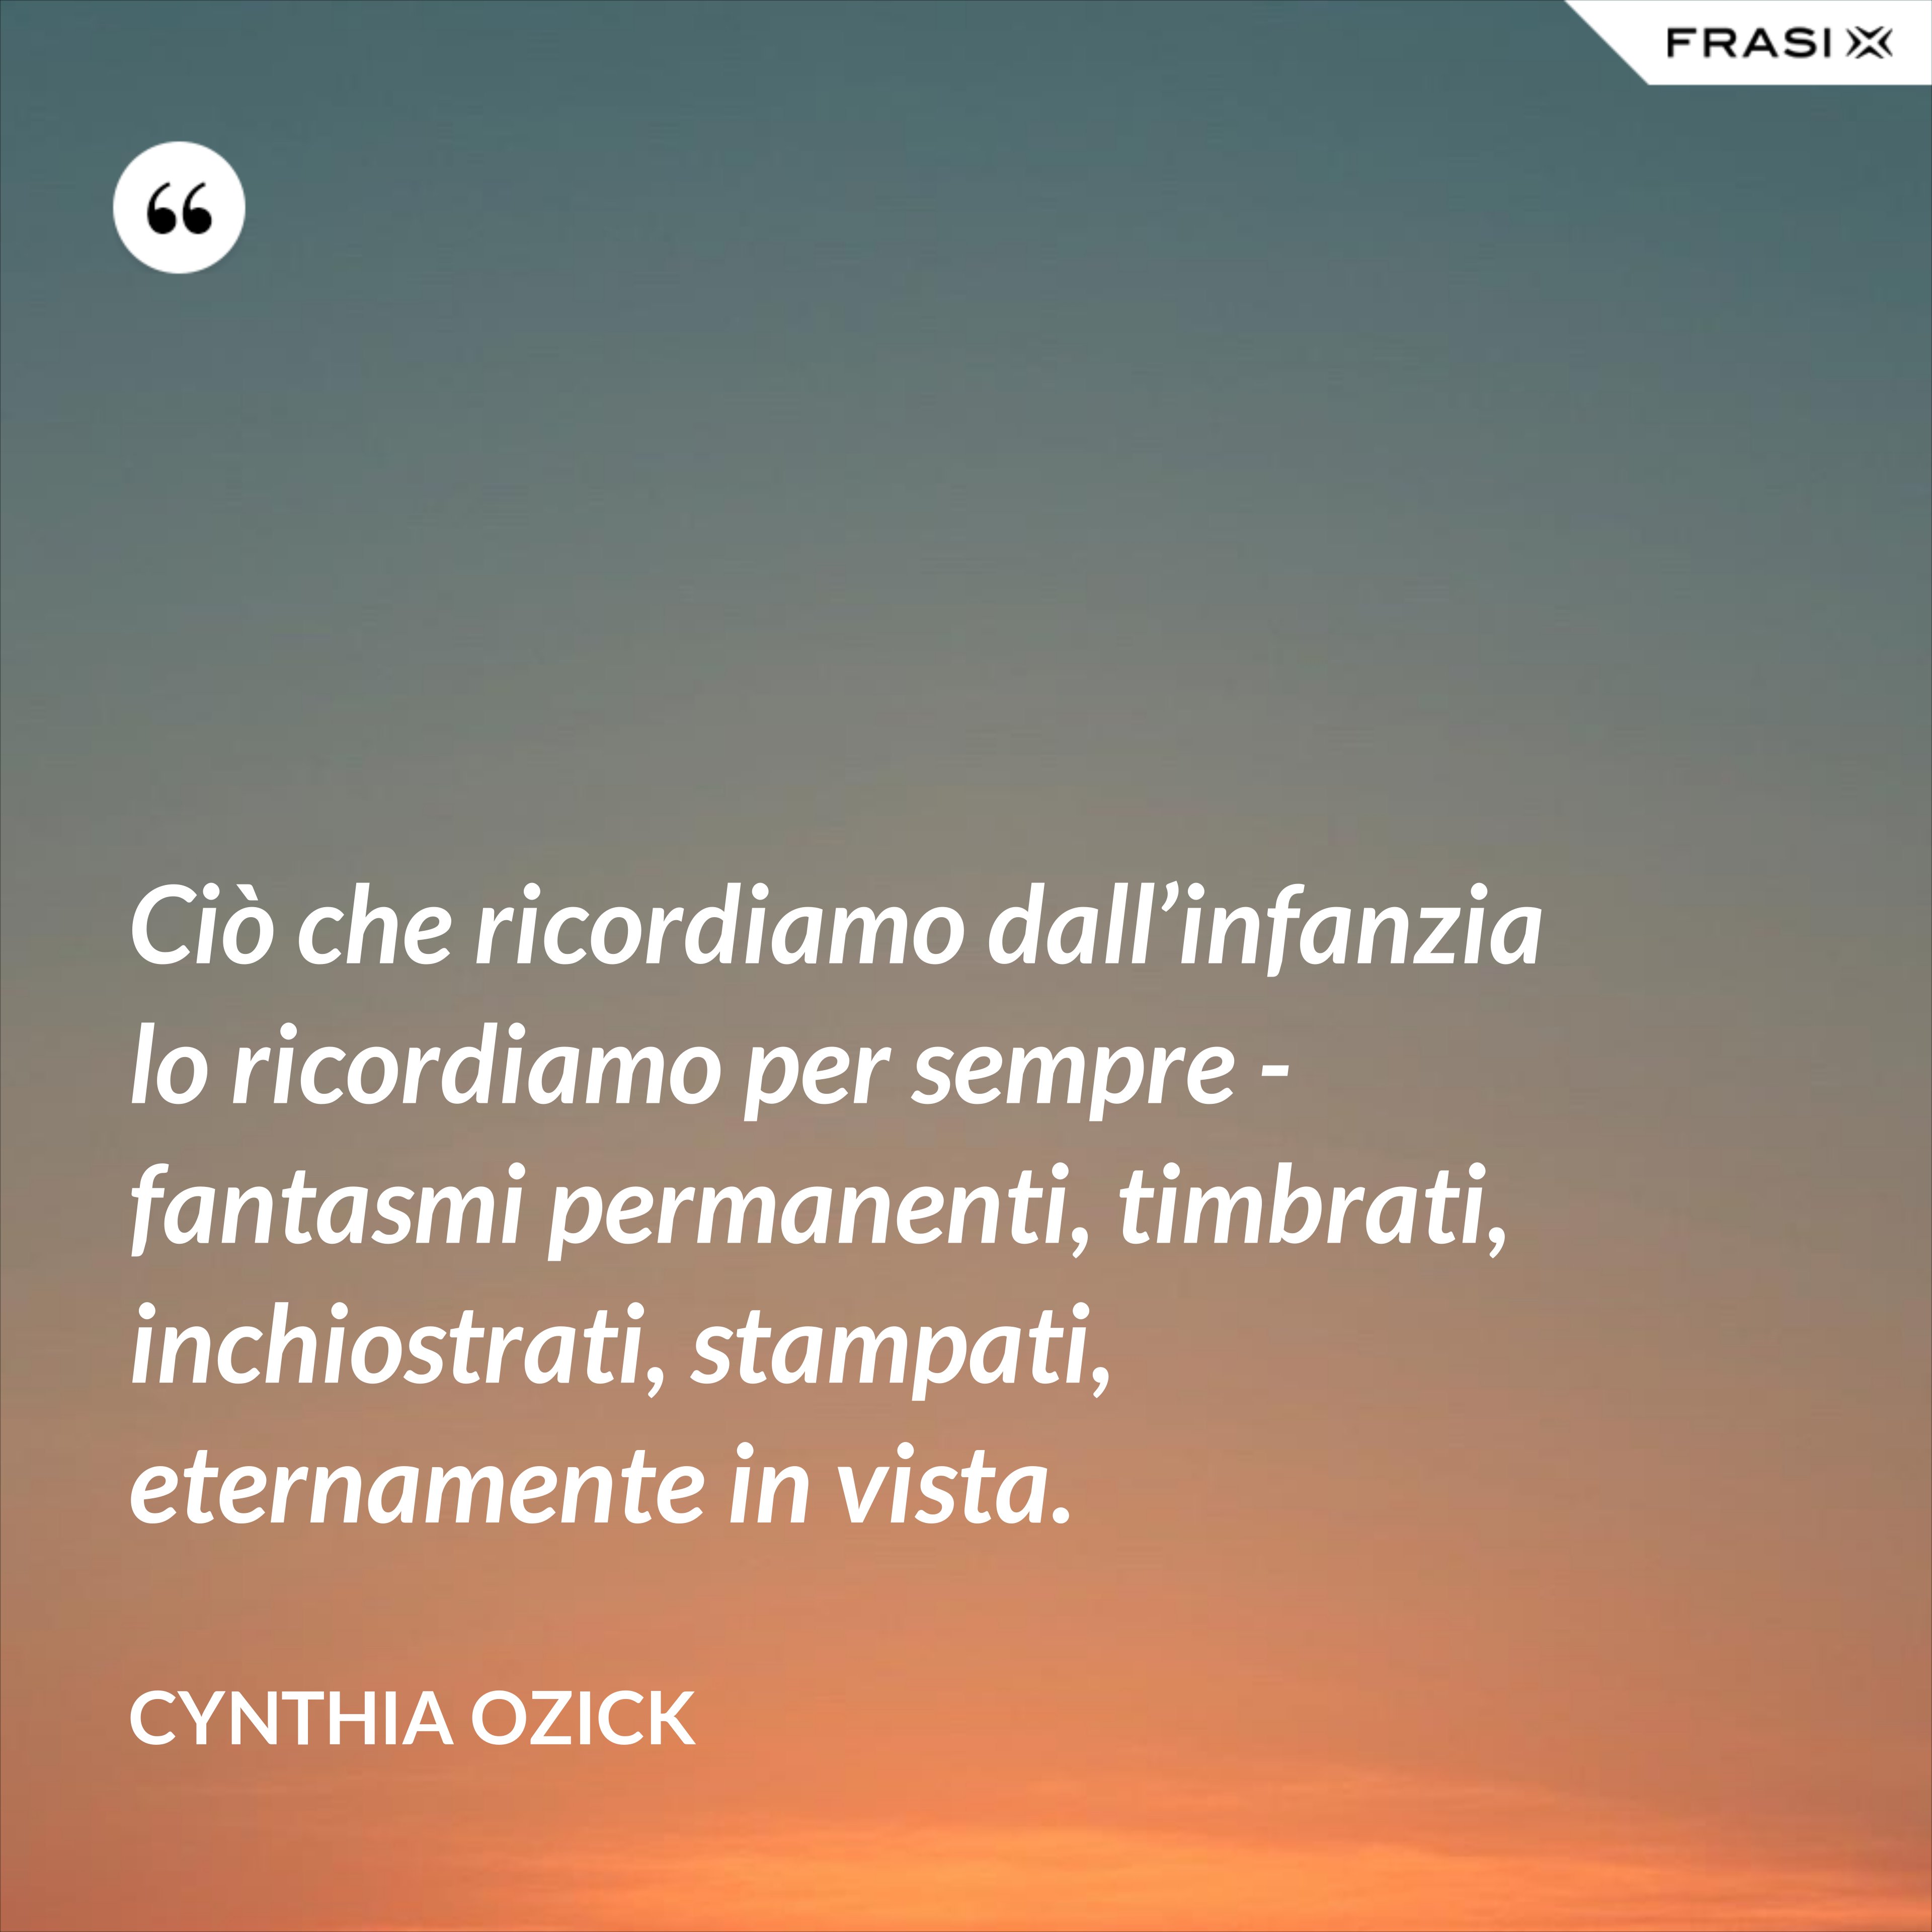 Ciò che ricordiamo dall’infanzia lo ricordiamo per sempre - fantasmi permanenti, timbrati, inchiostrati, stampati, eternamente in vista. - Cynthia Ozick